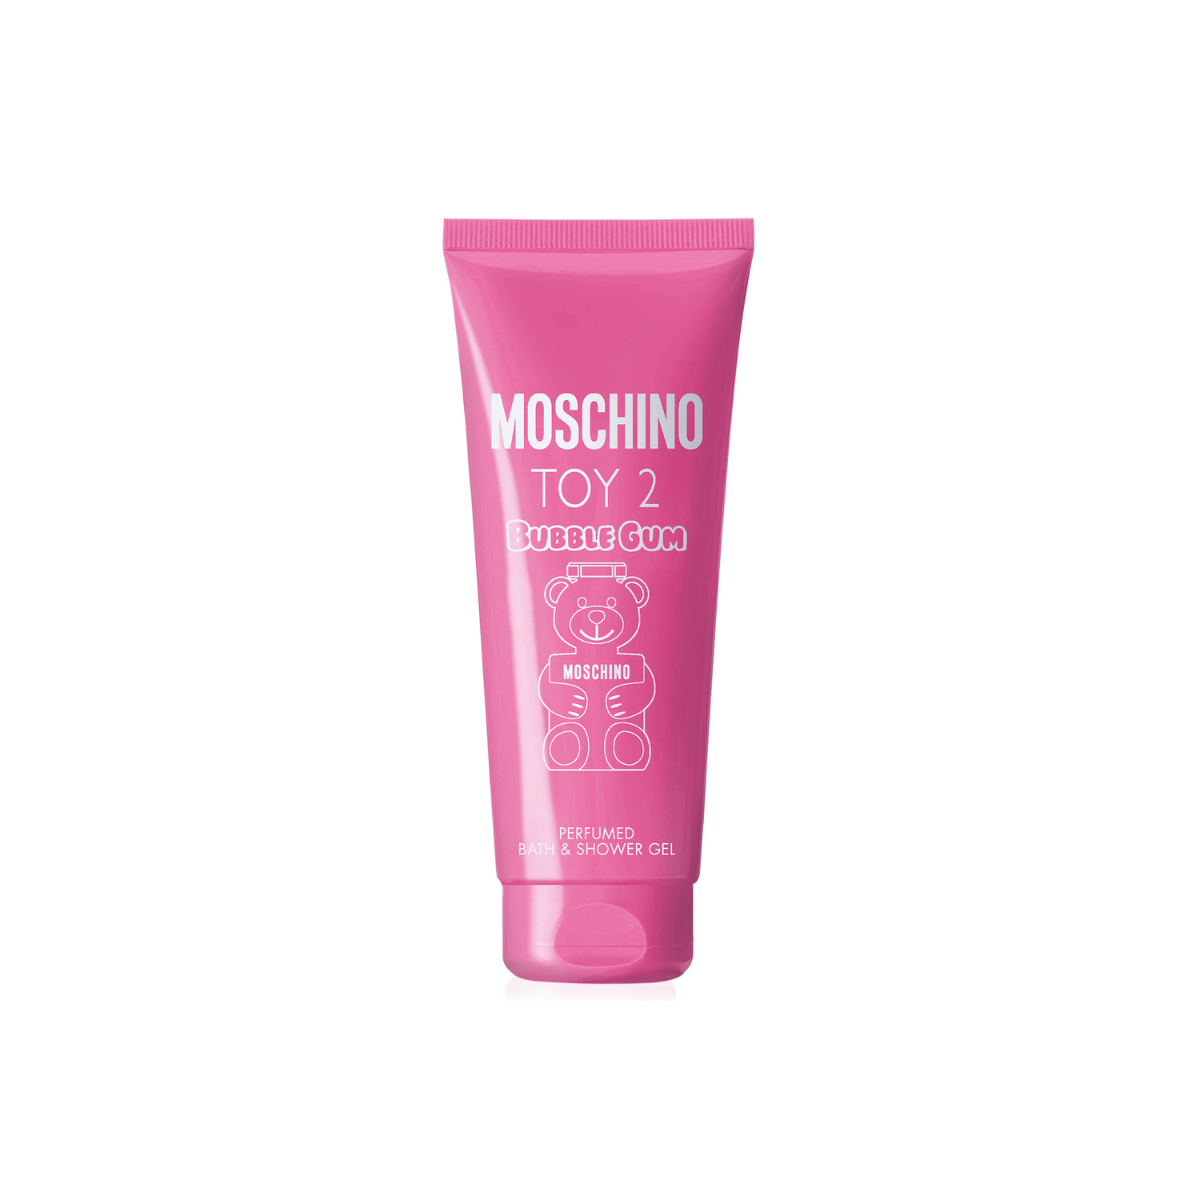 Moschino Toy 2 Bubblegum Shower Gel 200ml 